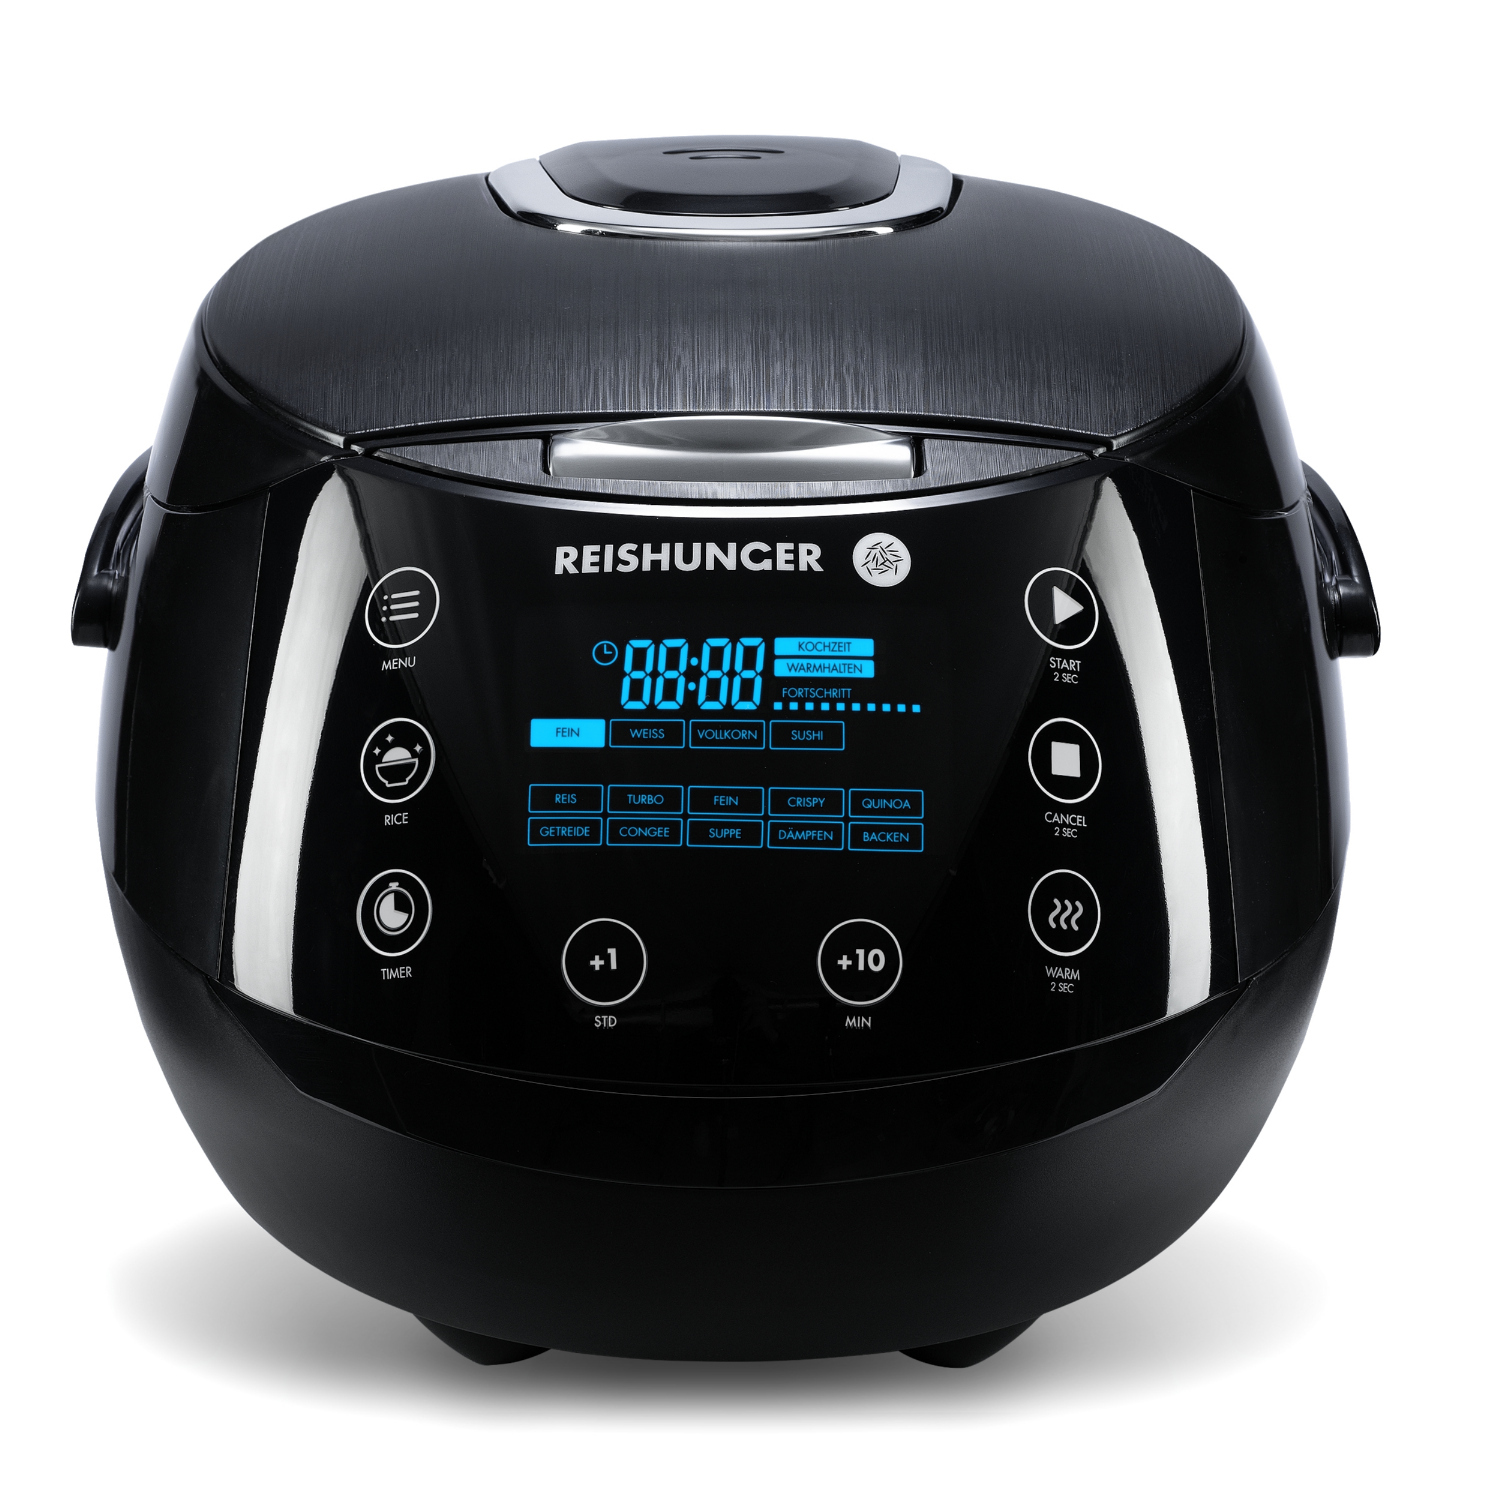 Reishunger Digitaler Reiskocher 538-DRK 1,5 Liter 860 Watt, schwarz